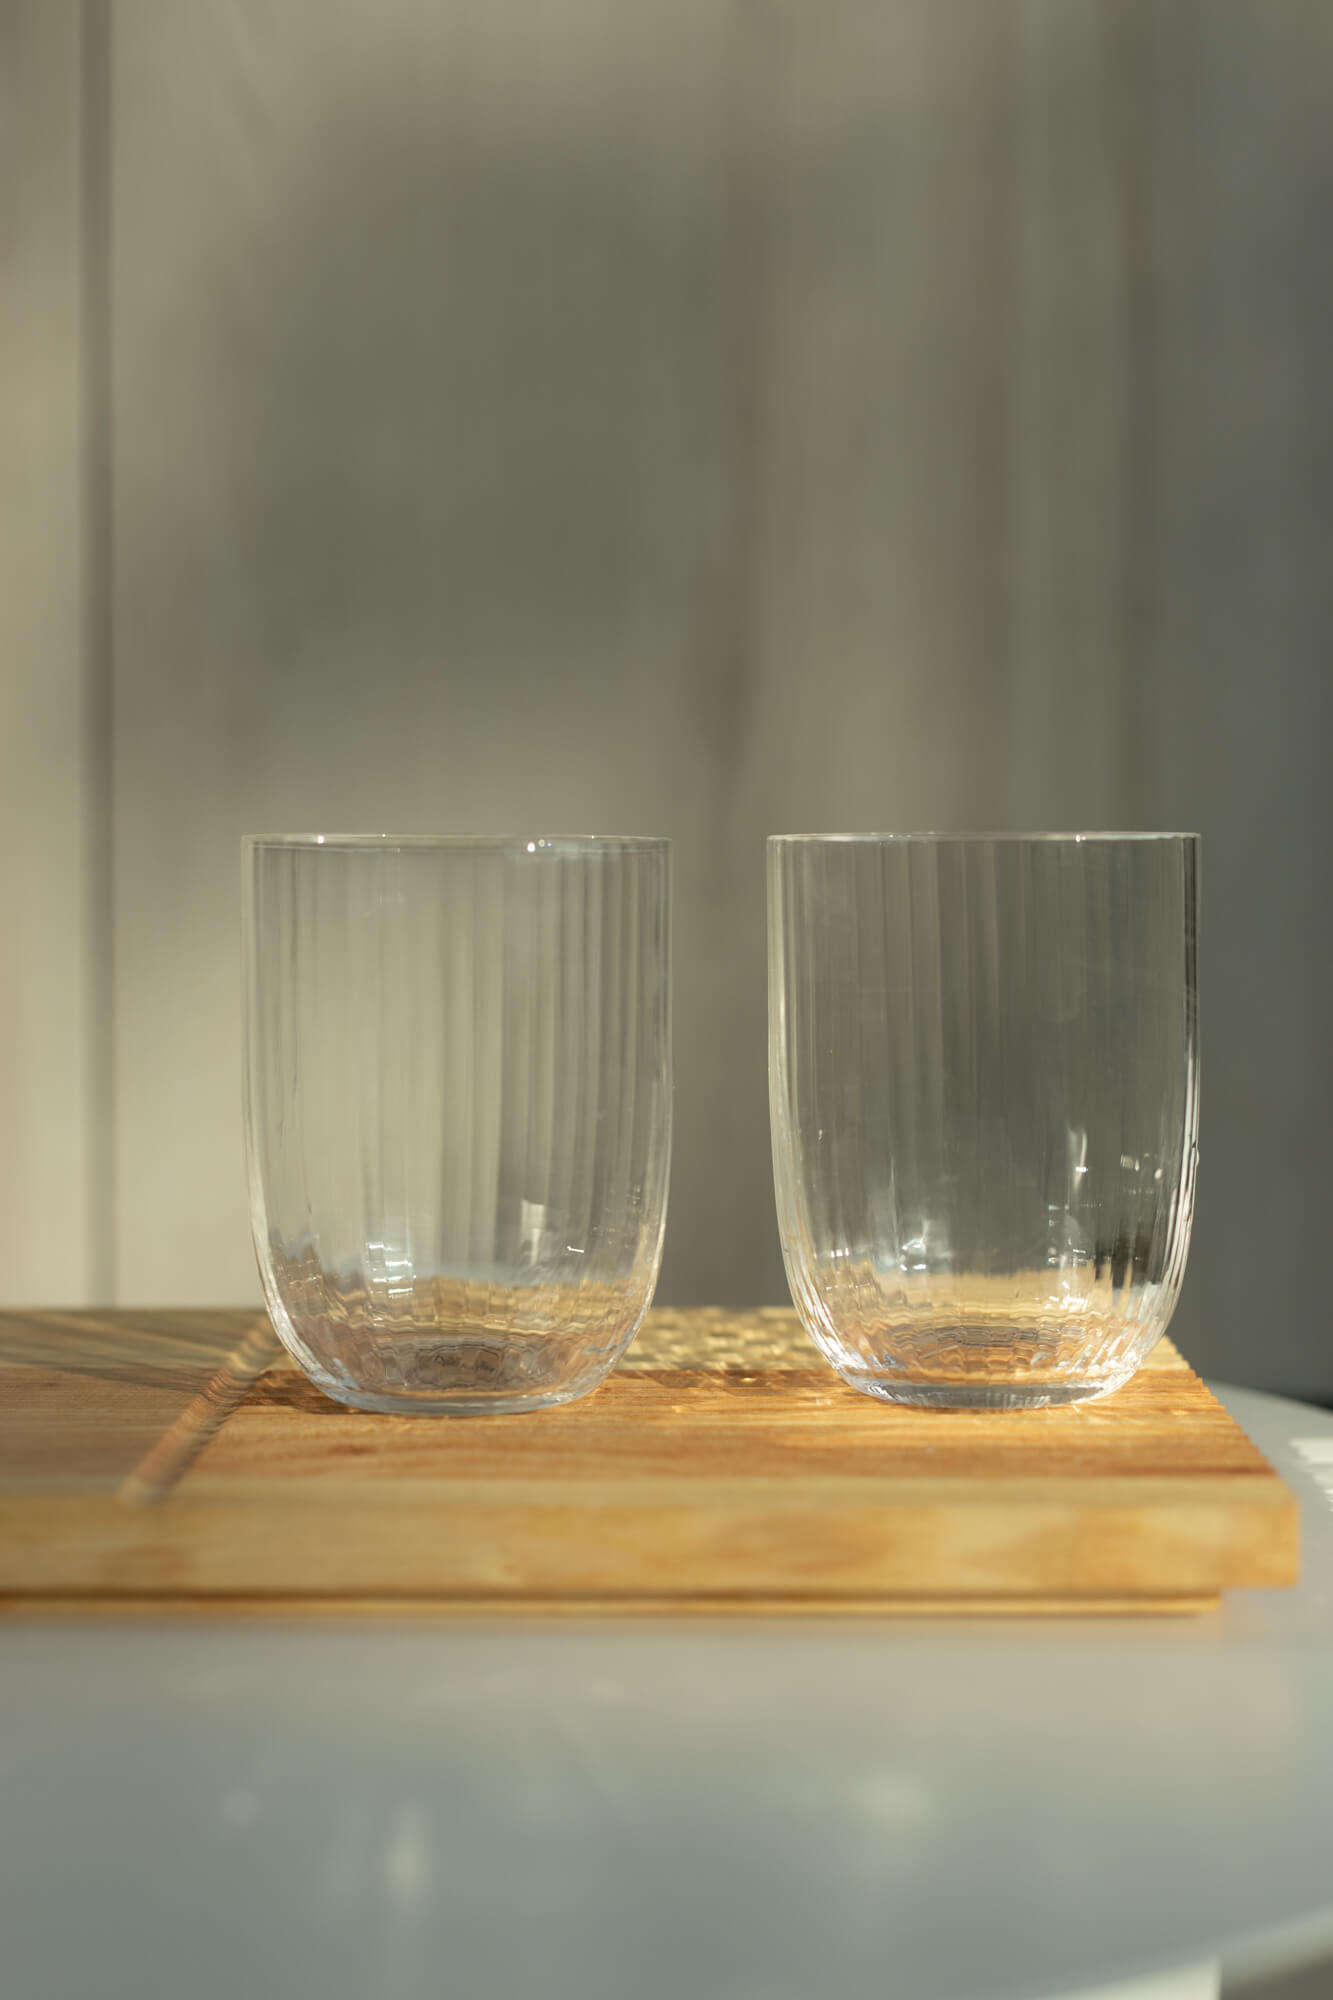 Dwie szklanki stoją na desce do krojenia i serwowania Fields.